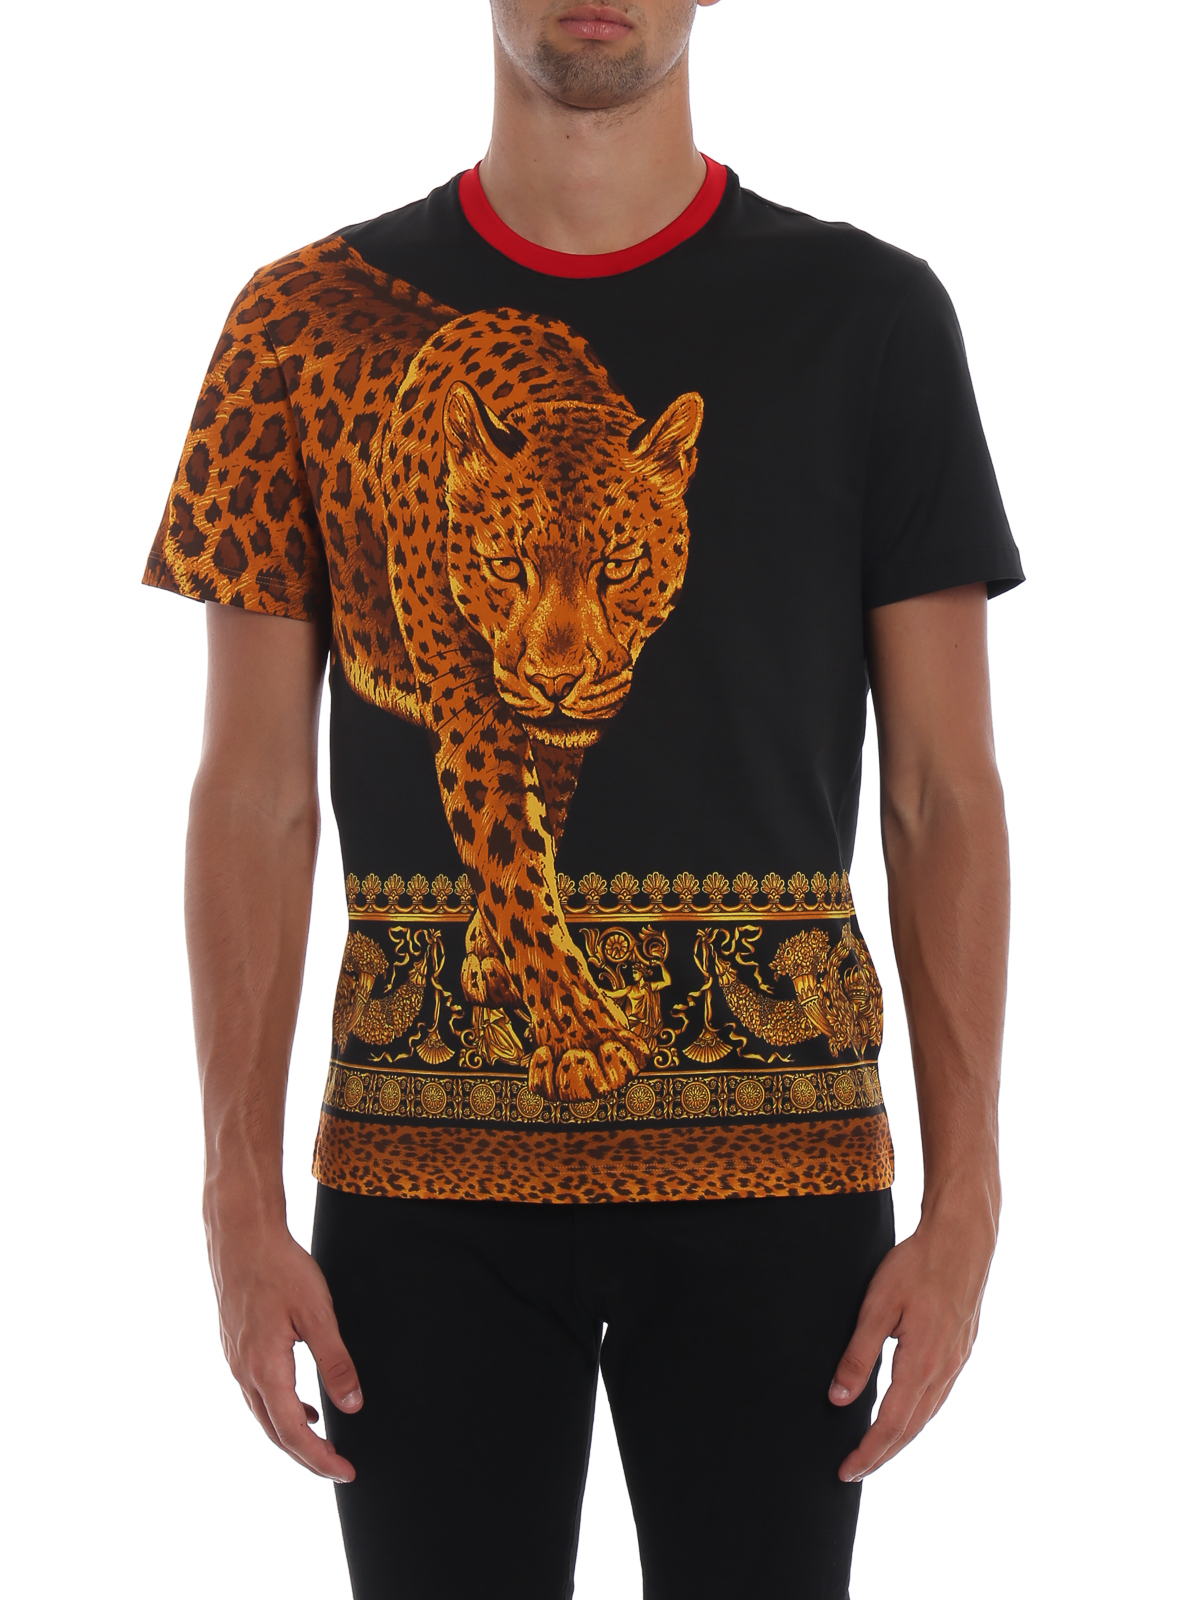 versace leopard shirt